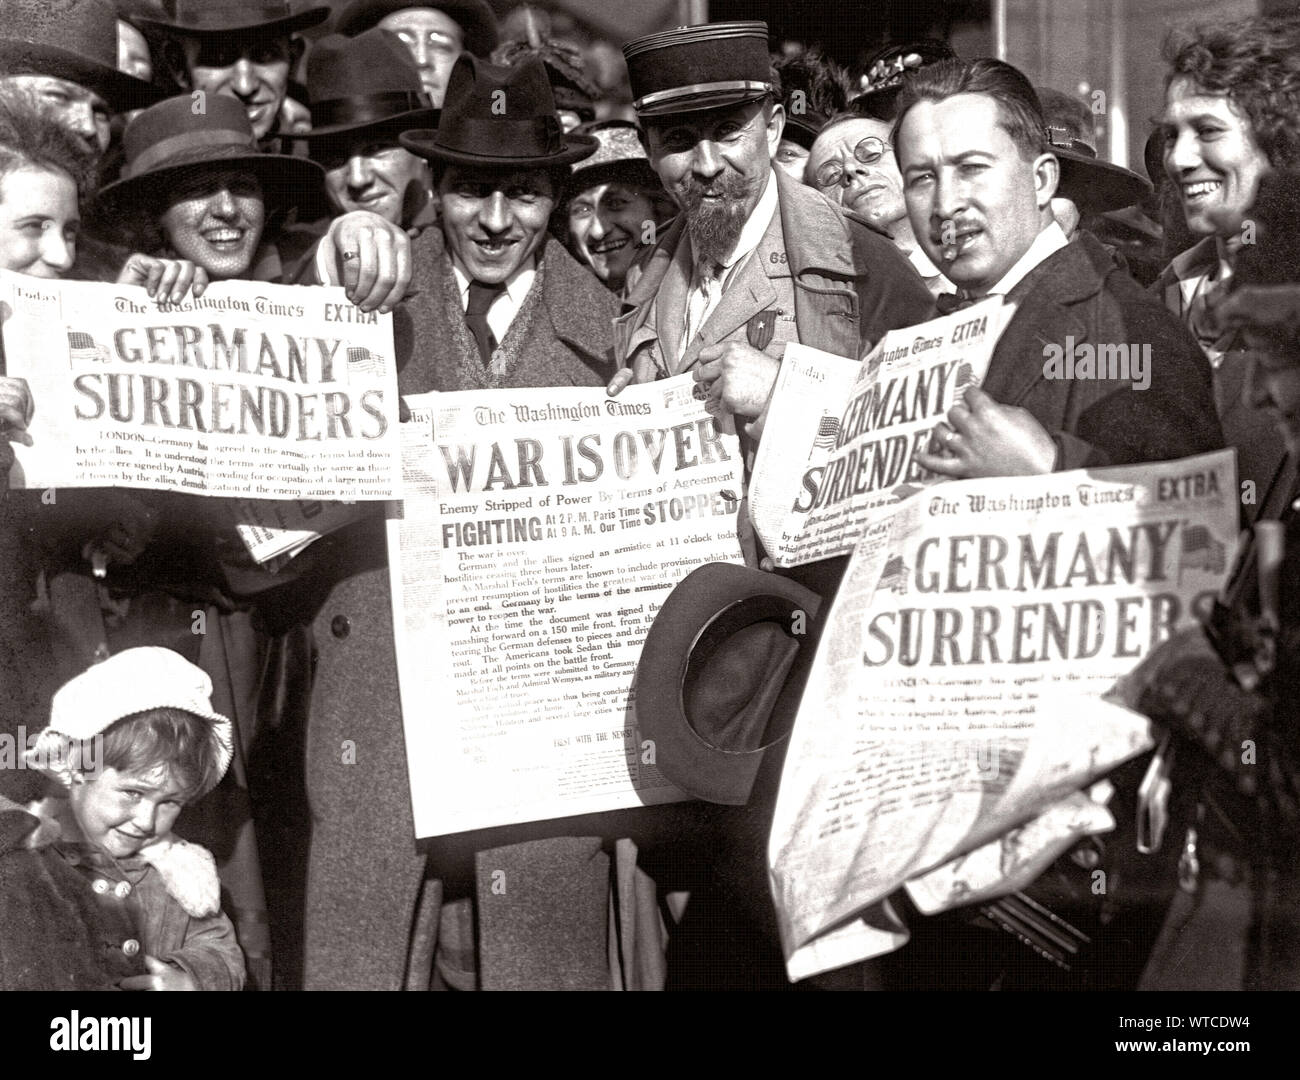 Jubilant américains à Washington, D.C., afficher les titres des journaux qui annoncent l'abandon de l'Allemagne, mettant fin à la Première Guerre mondiale, le 8 novembre 1918. Banque D'Images